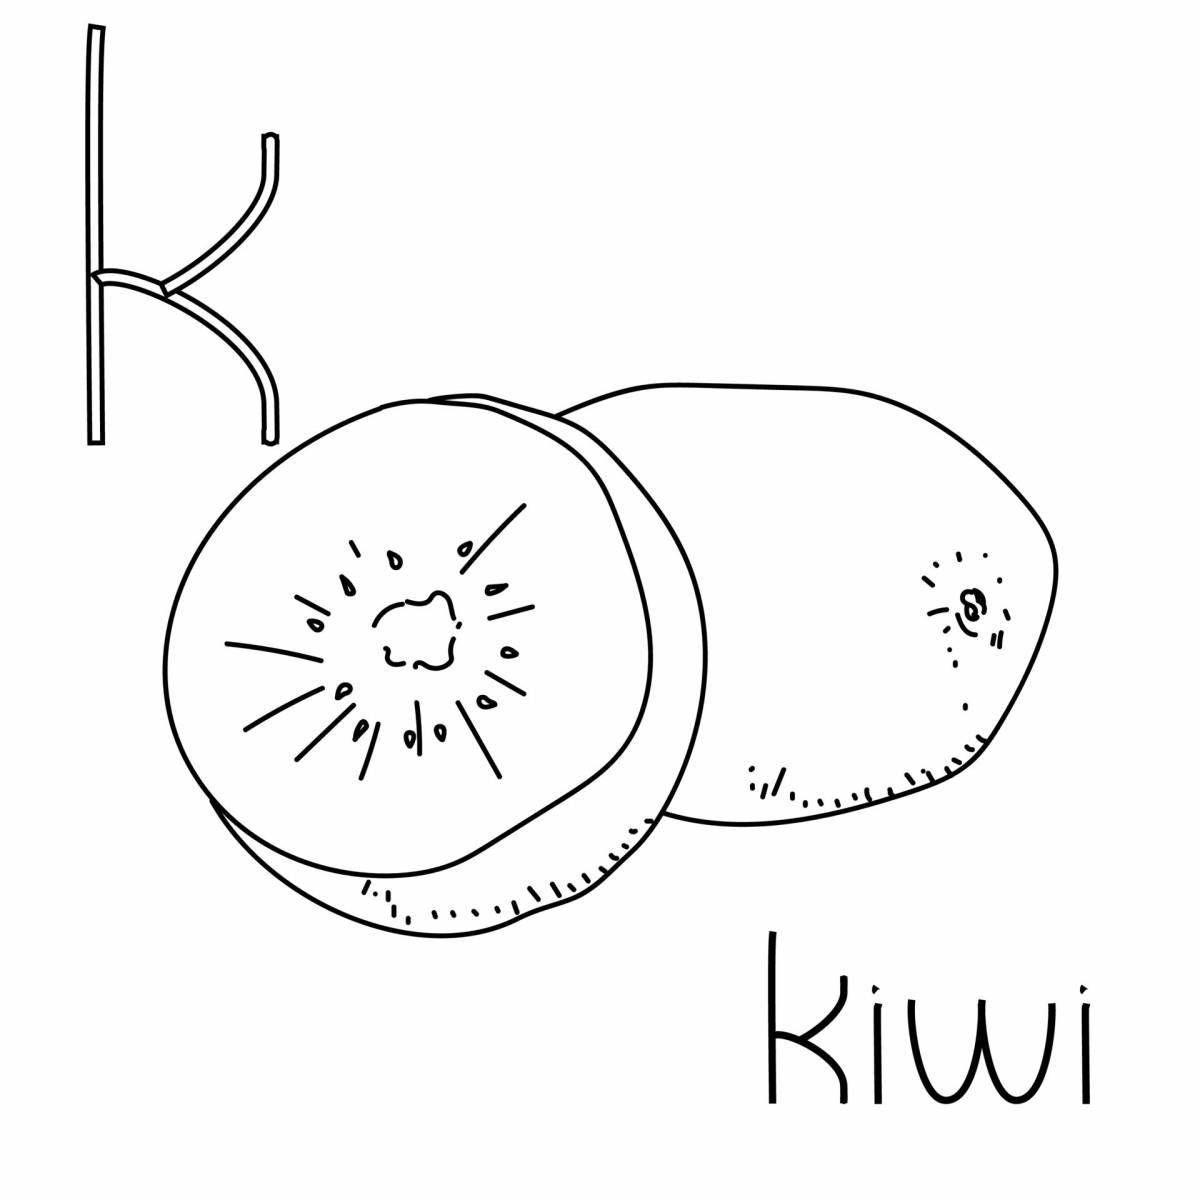 Fun coloring kiwi willy